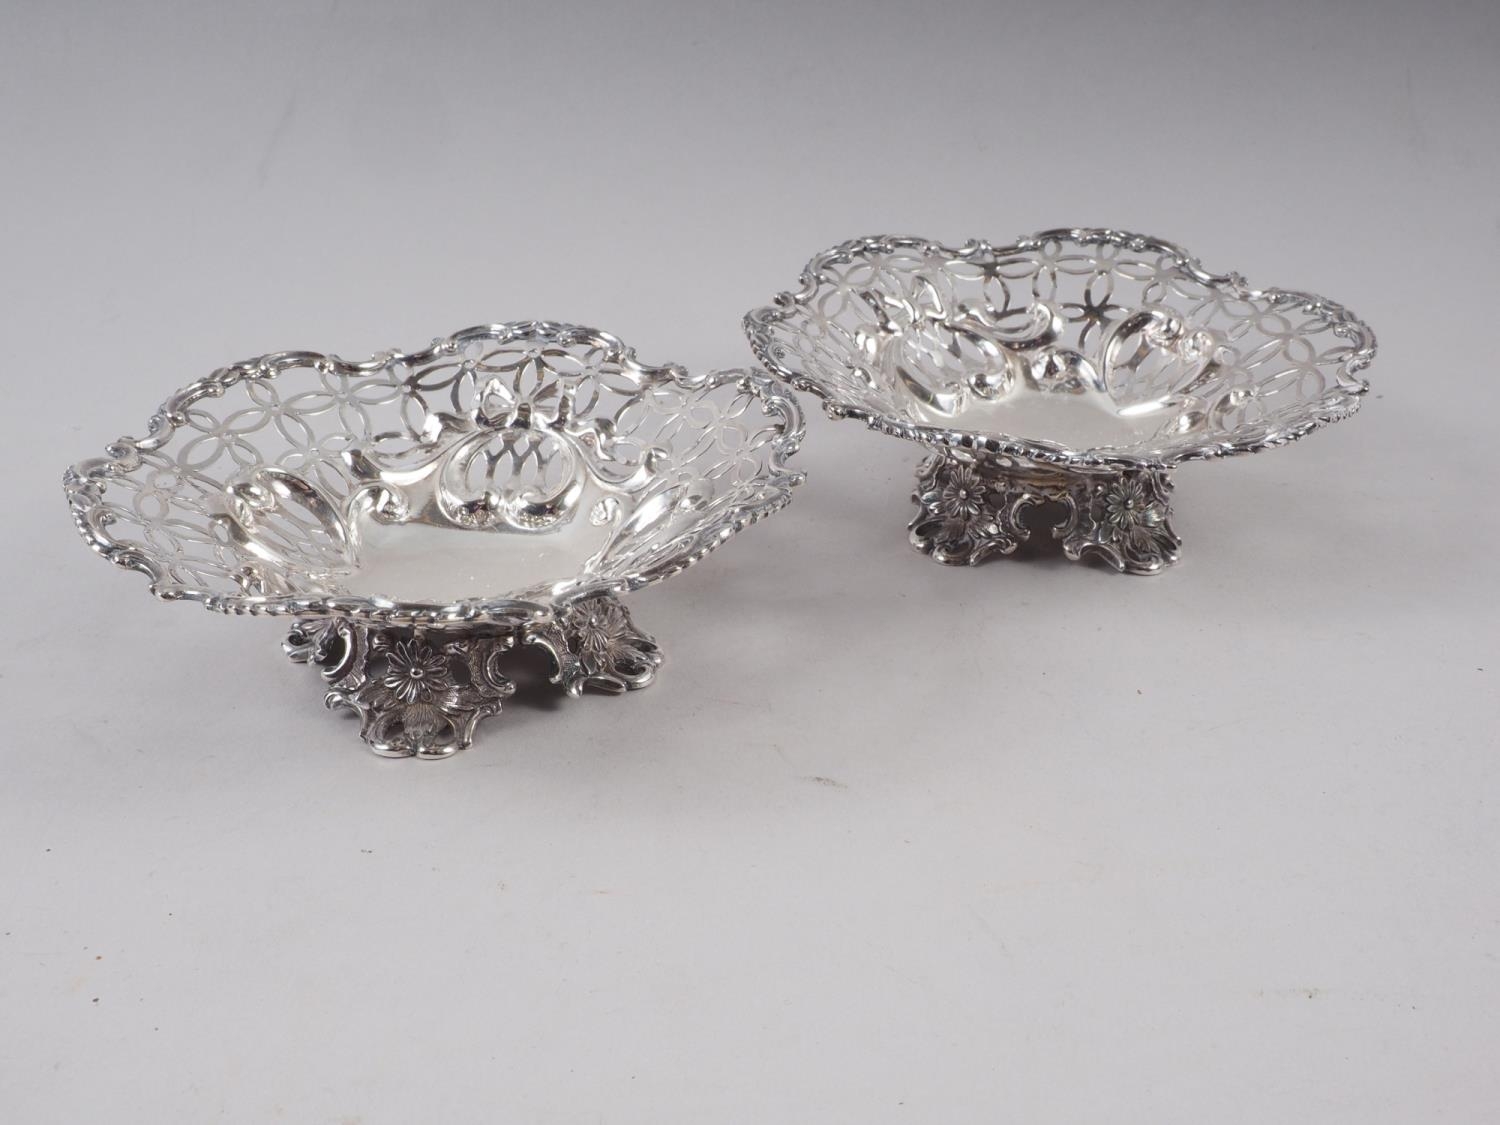 A pair of pierced silver bonbon dishes, on scroll feet, 6.5oz troy approx